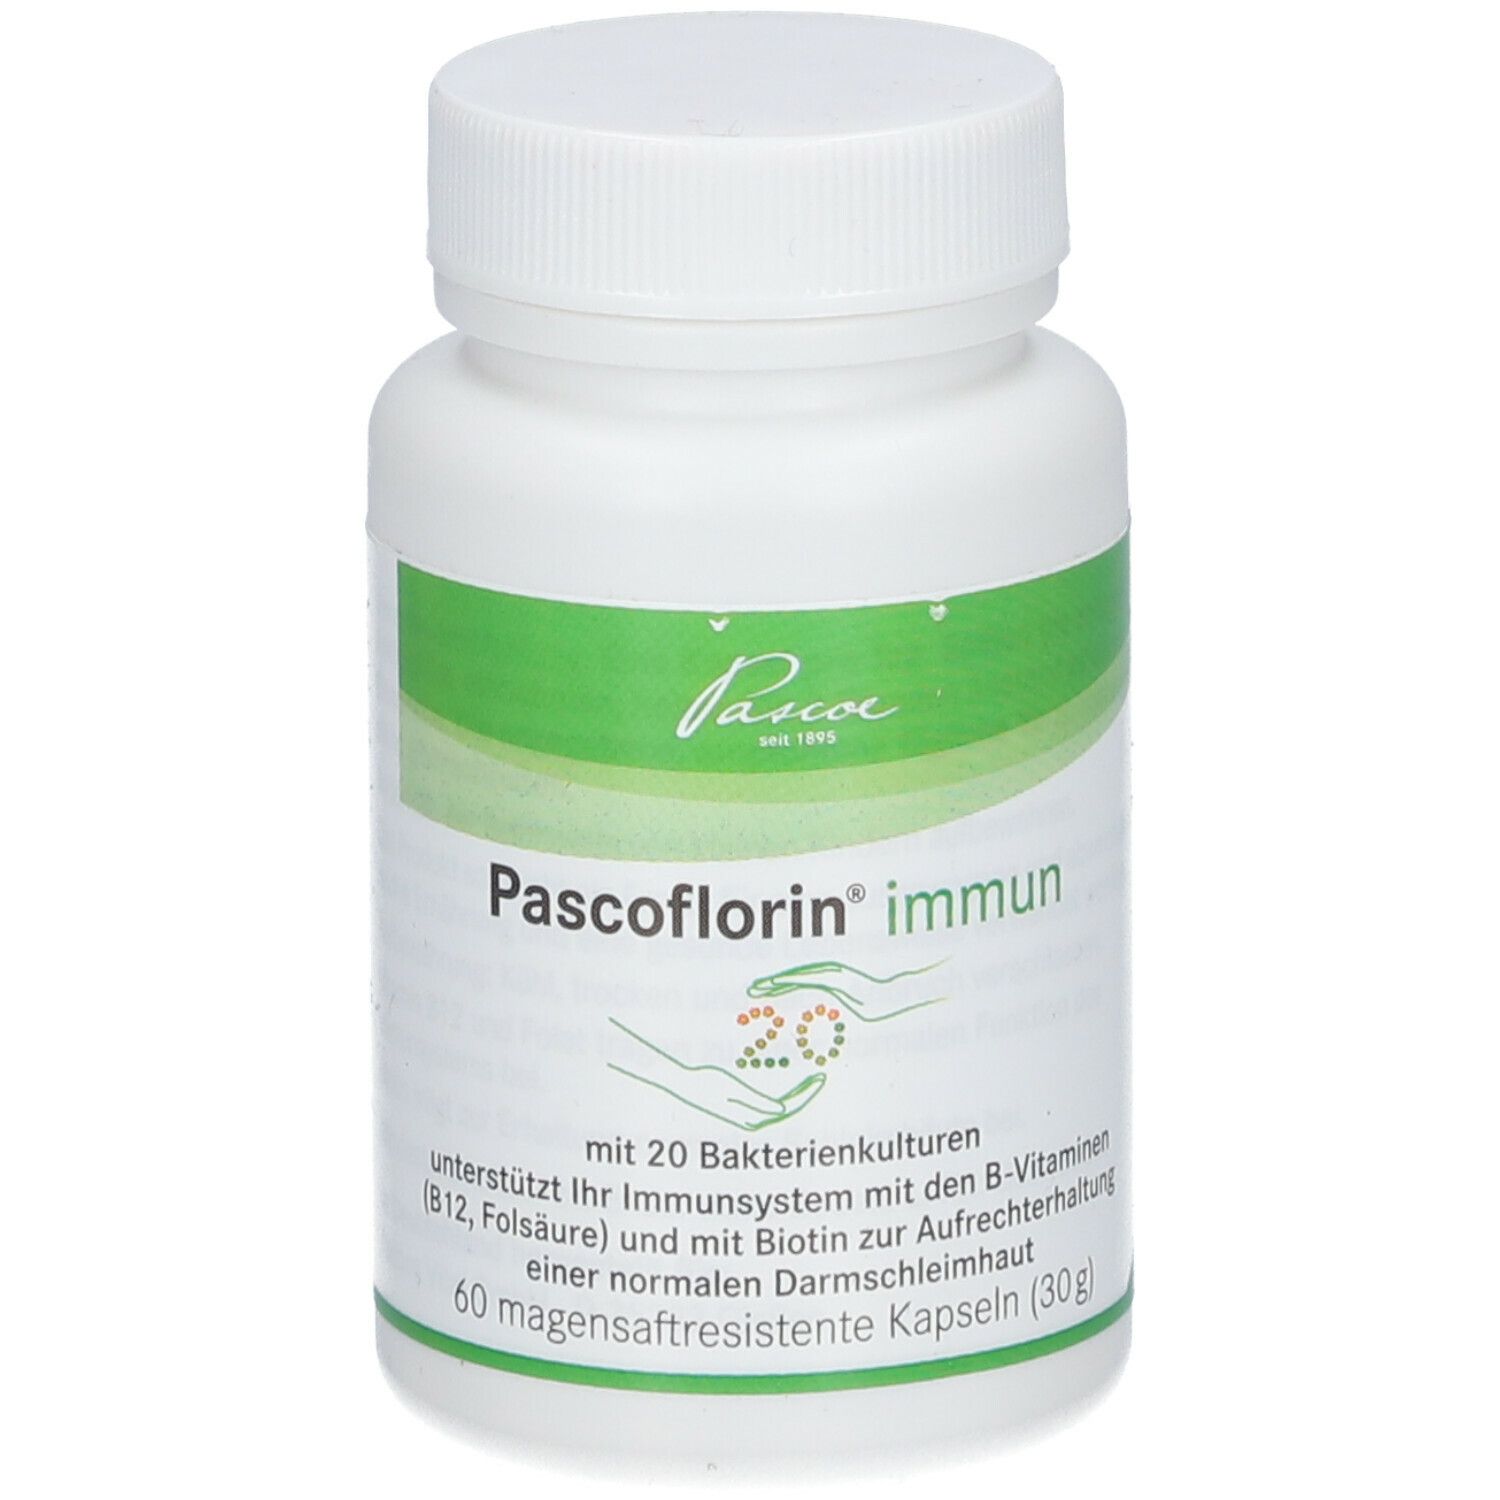 Pascoflorin® immun